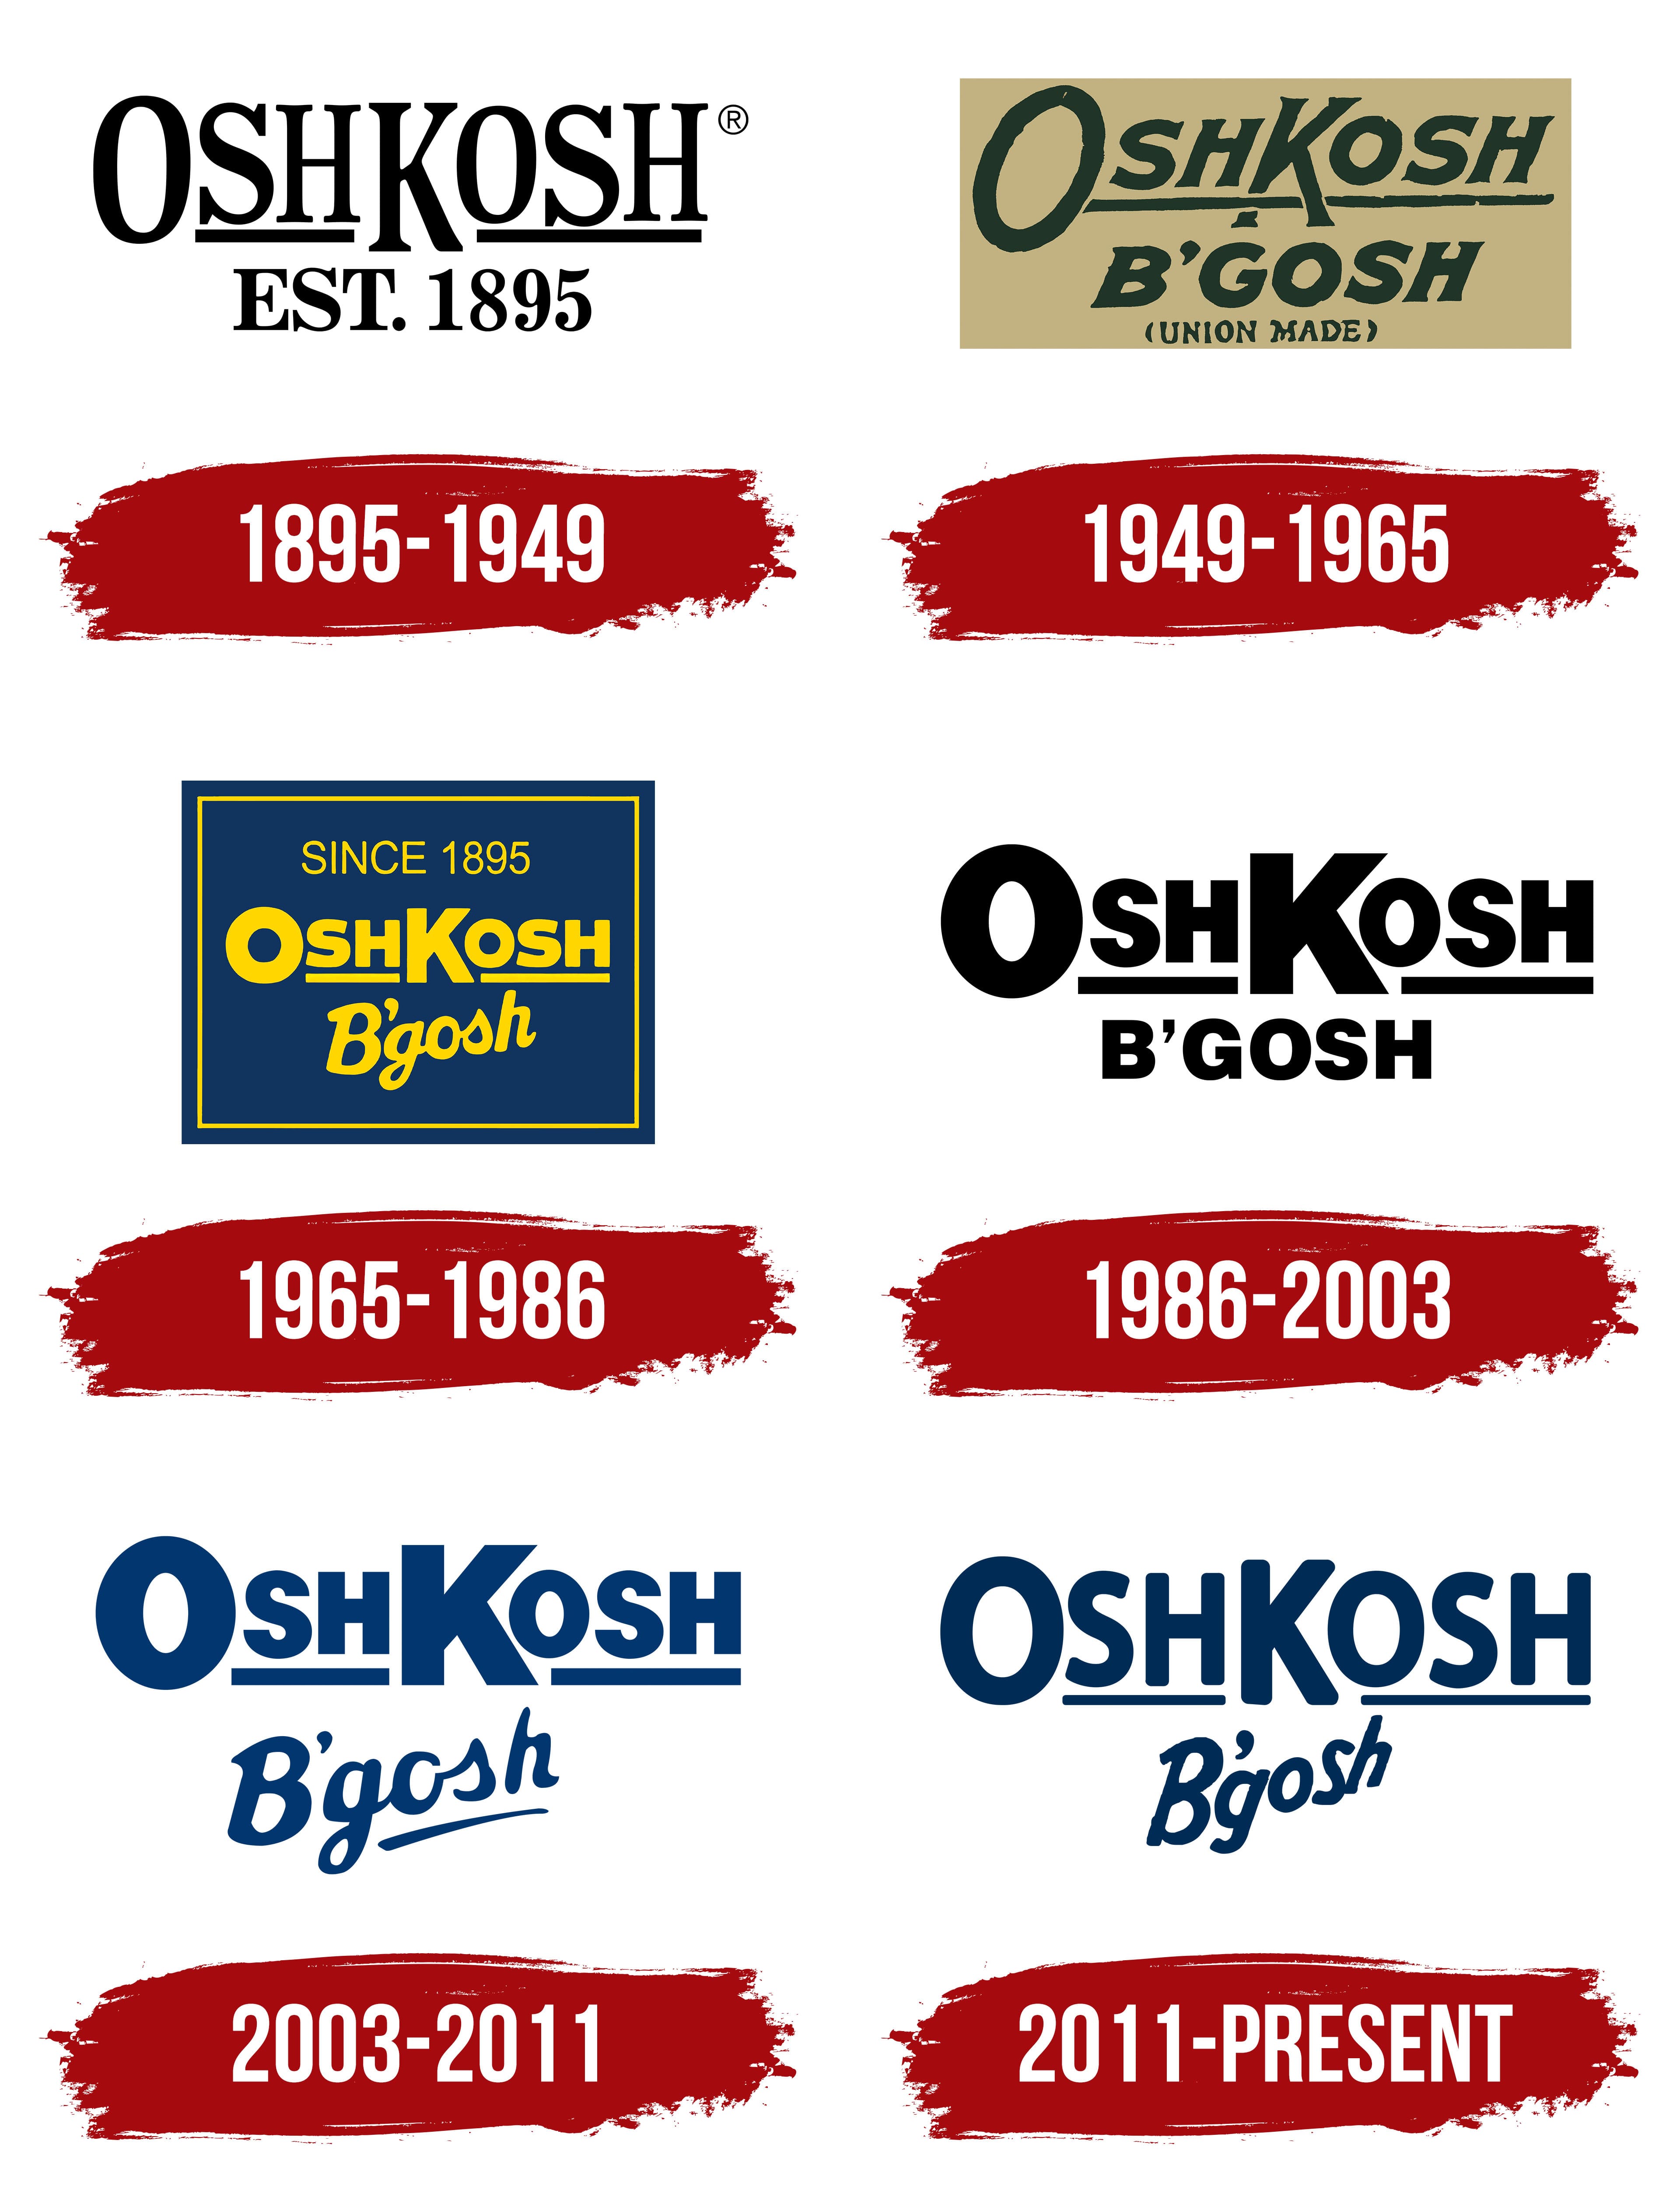 OshKosh B'gosh Logo, symbol, meaning, history, PNG, brand